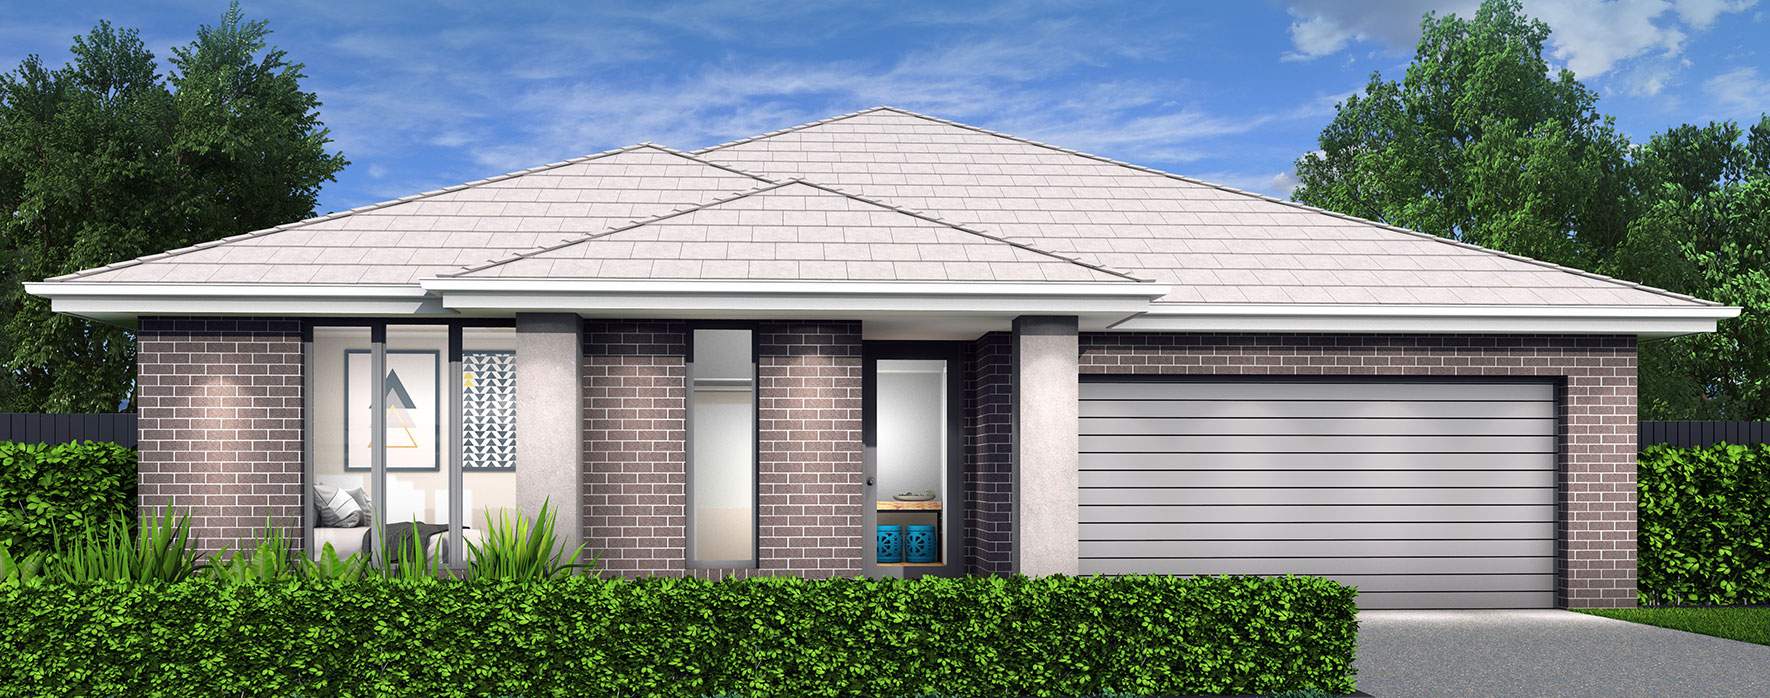 single-storey-house-design-modern-facade